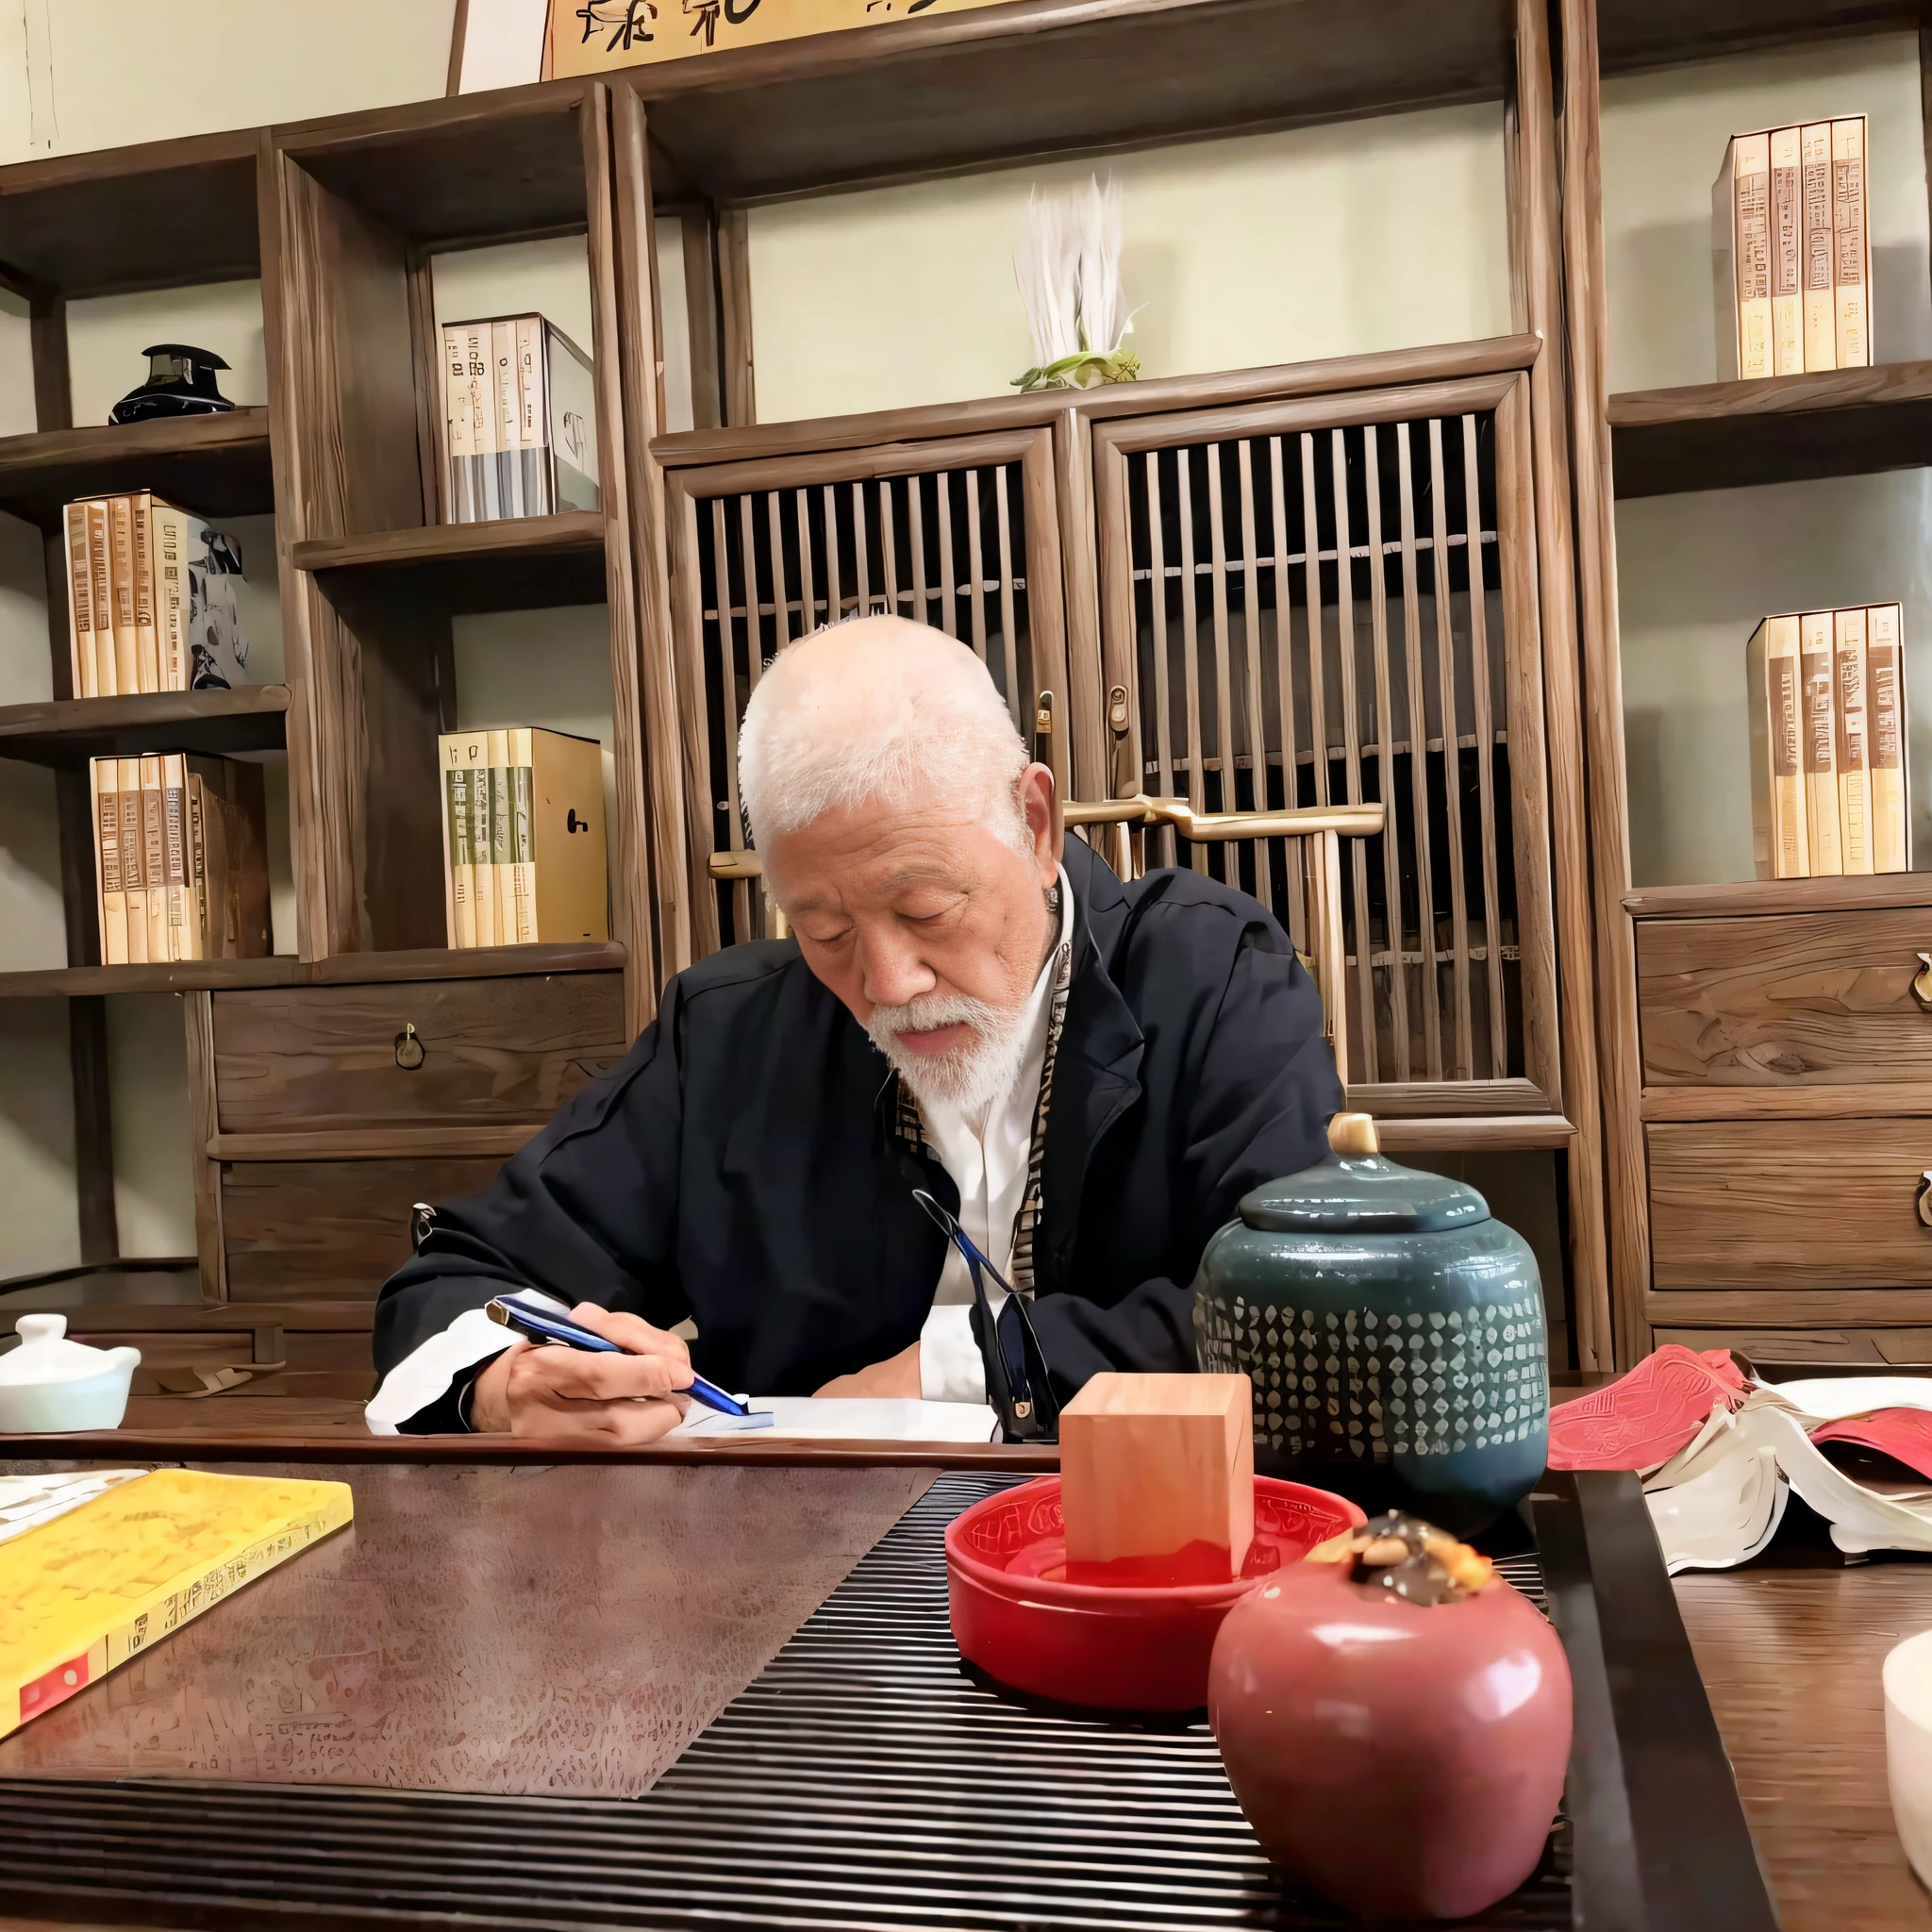 テーブルに座って本を書いている男性がいた, 雪舟等陽に触発された, 彼は約80歳です, riichi ueshiba, Chiba Yuda, 伊藤若冲にインスピレーションを受けた, 呉道子に触発された, inspired by Kanō Tanshin